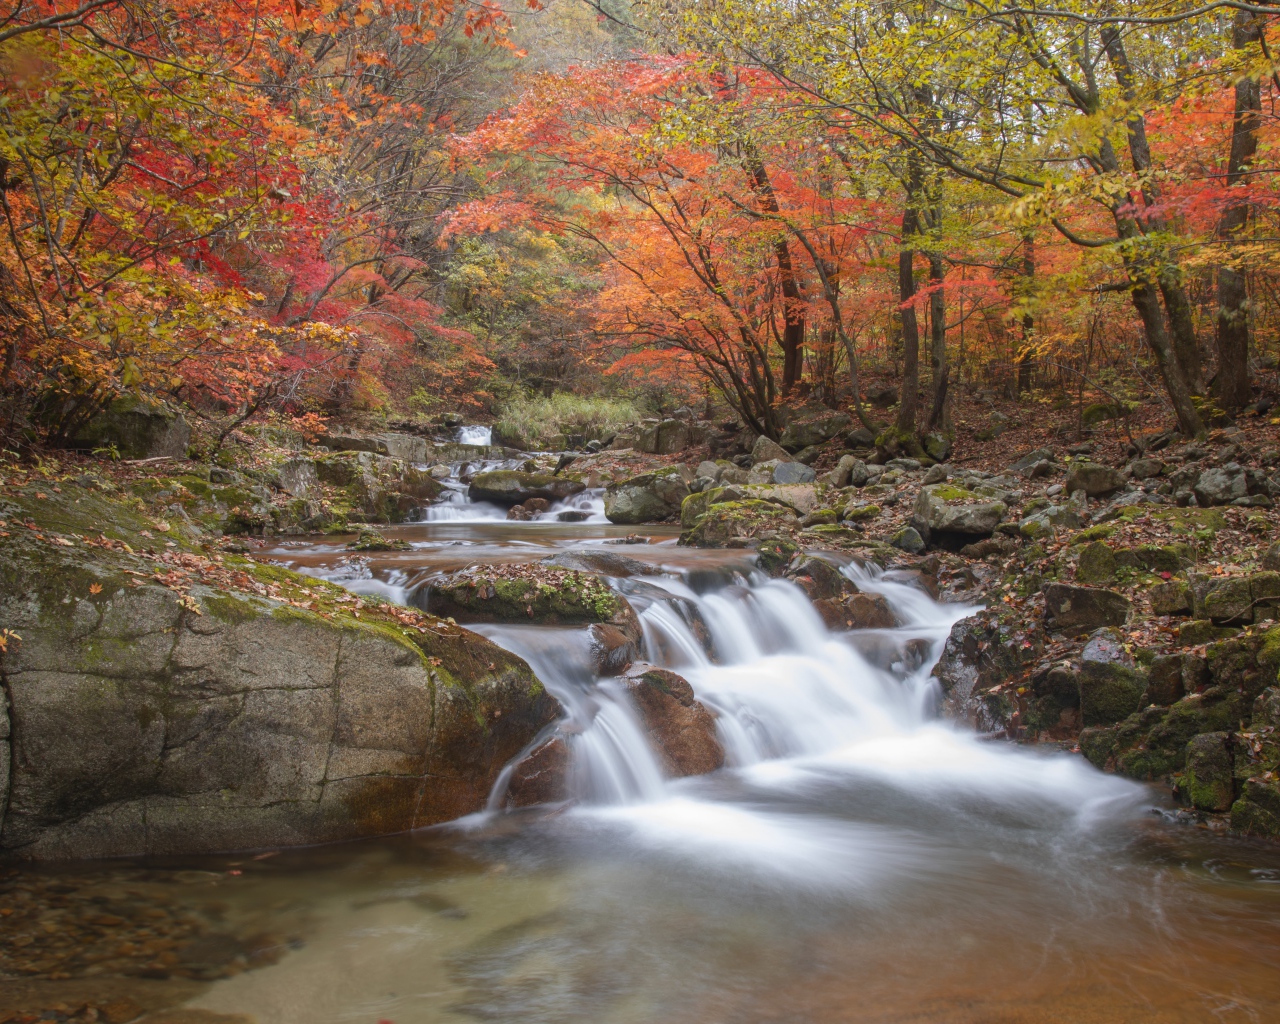 Быстрая вода реки стекает по камням в осеннем лесу 